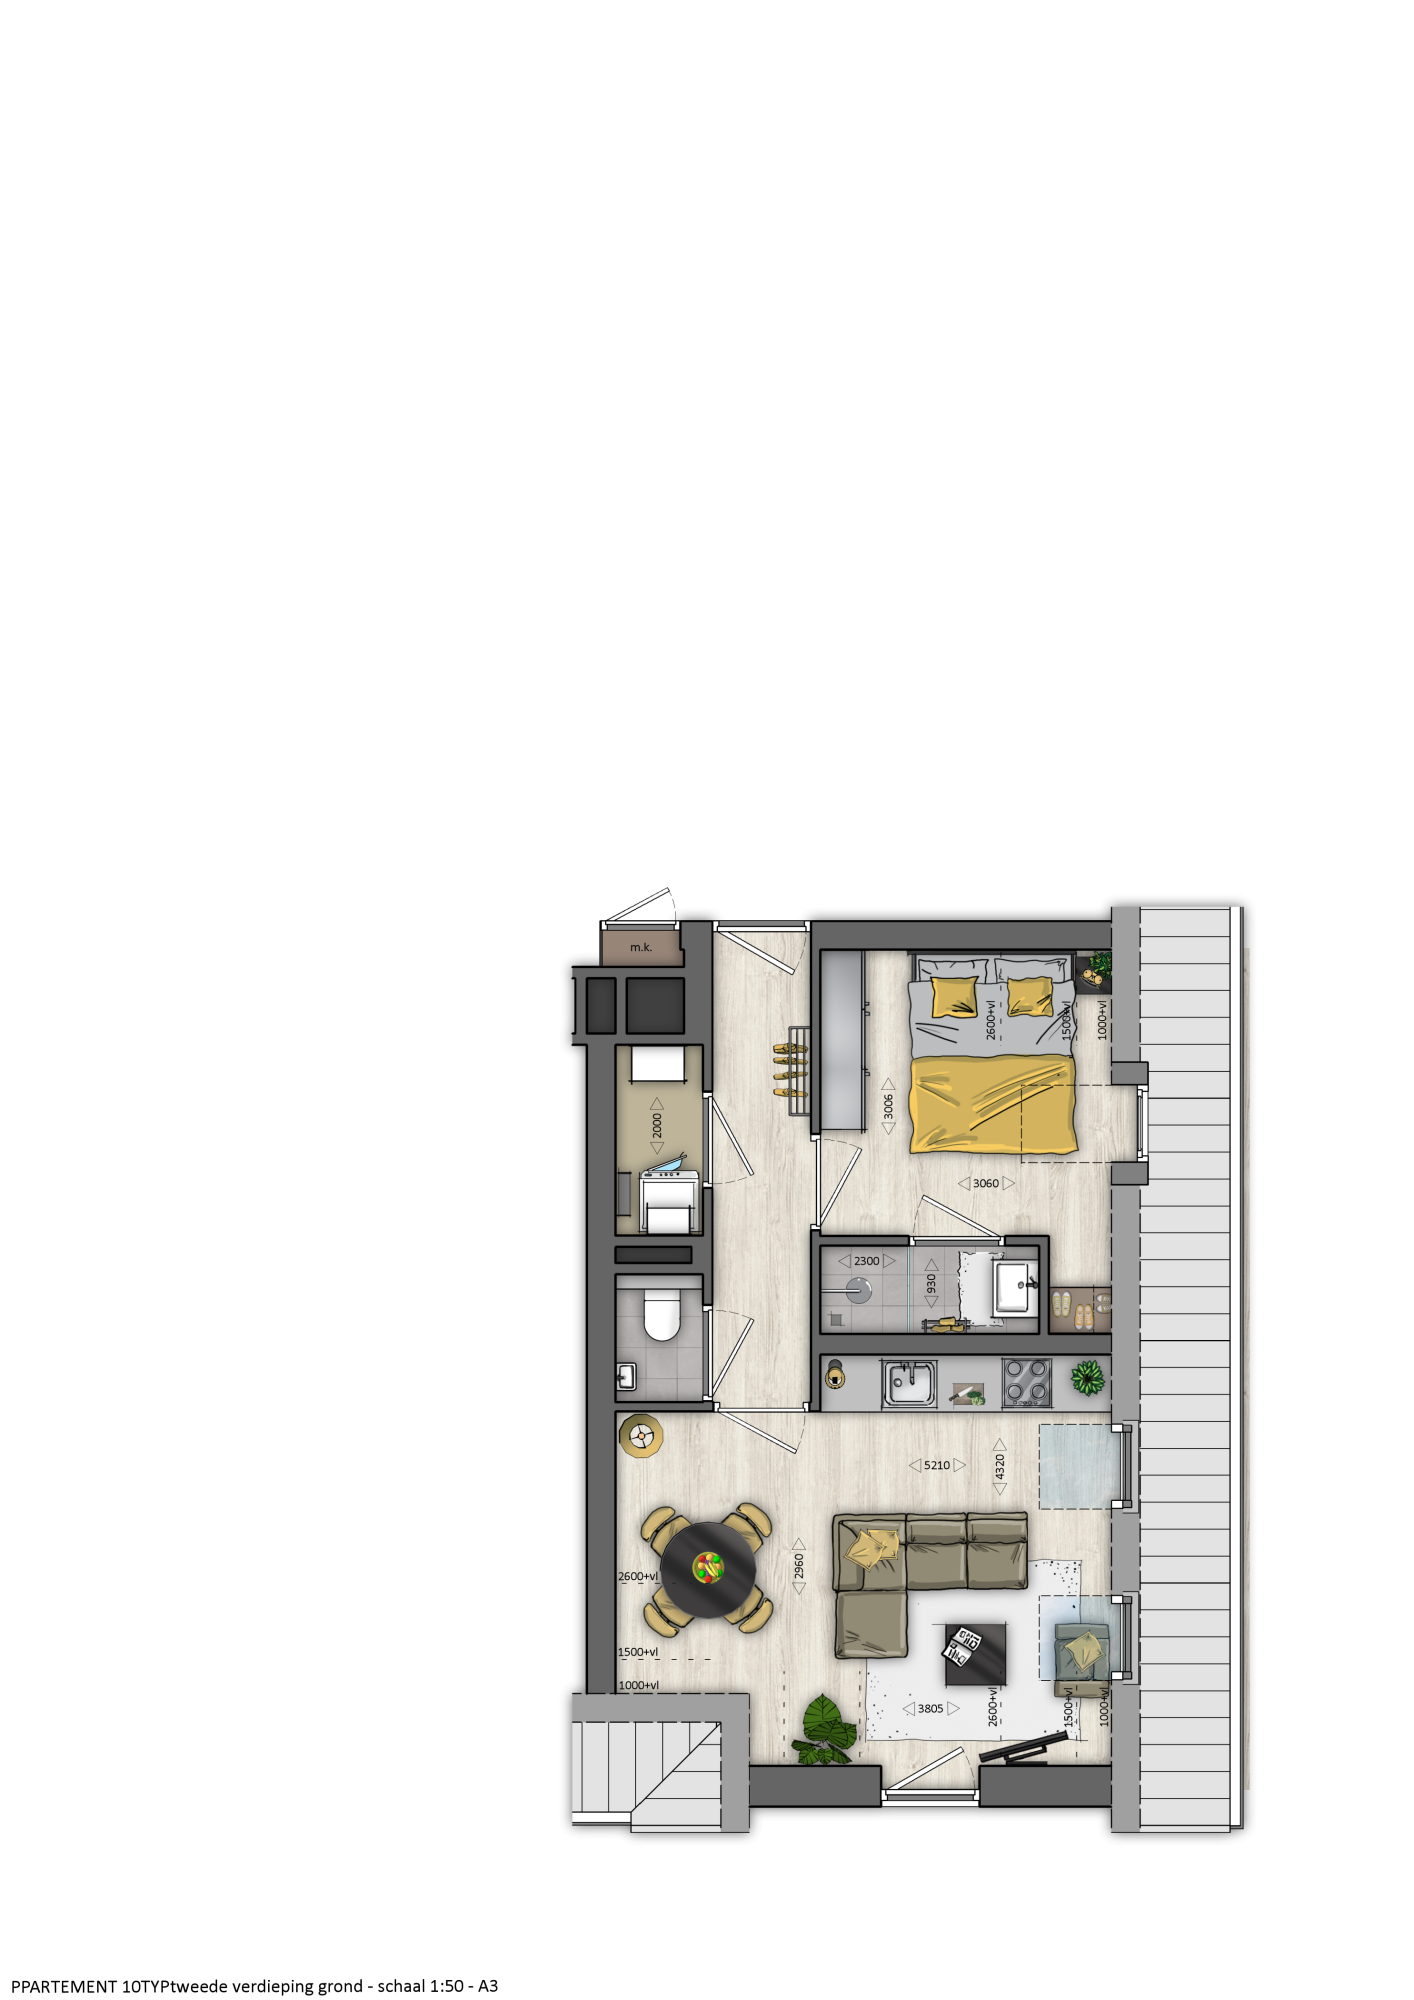 appartement 16 tweede verdieping plattegrond